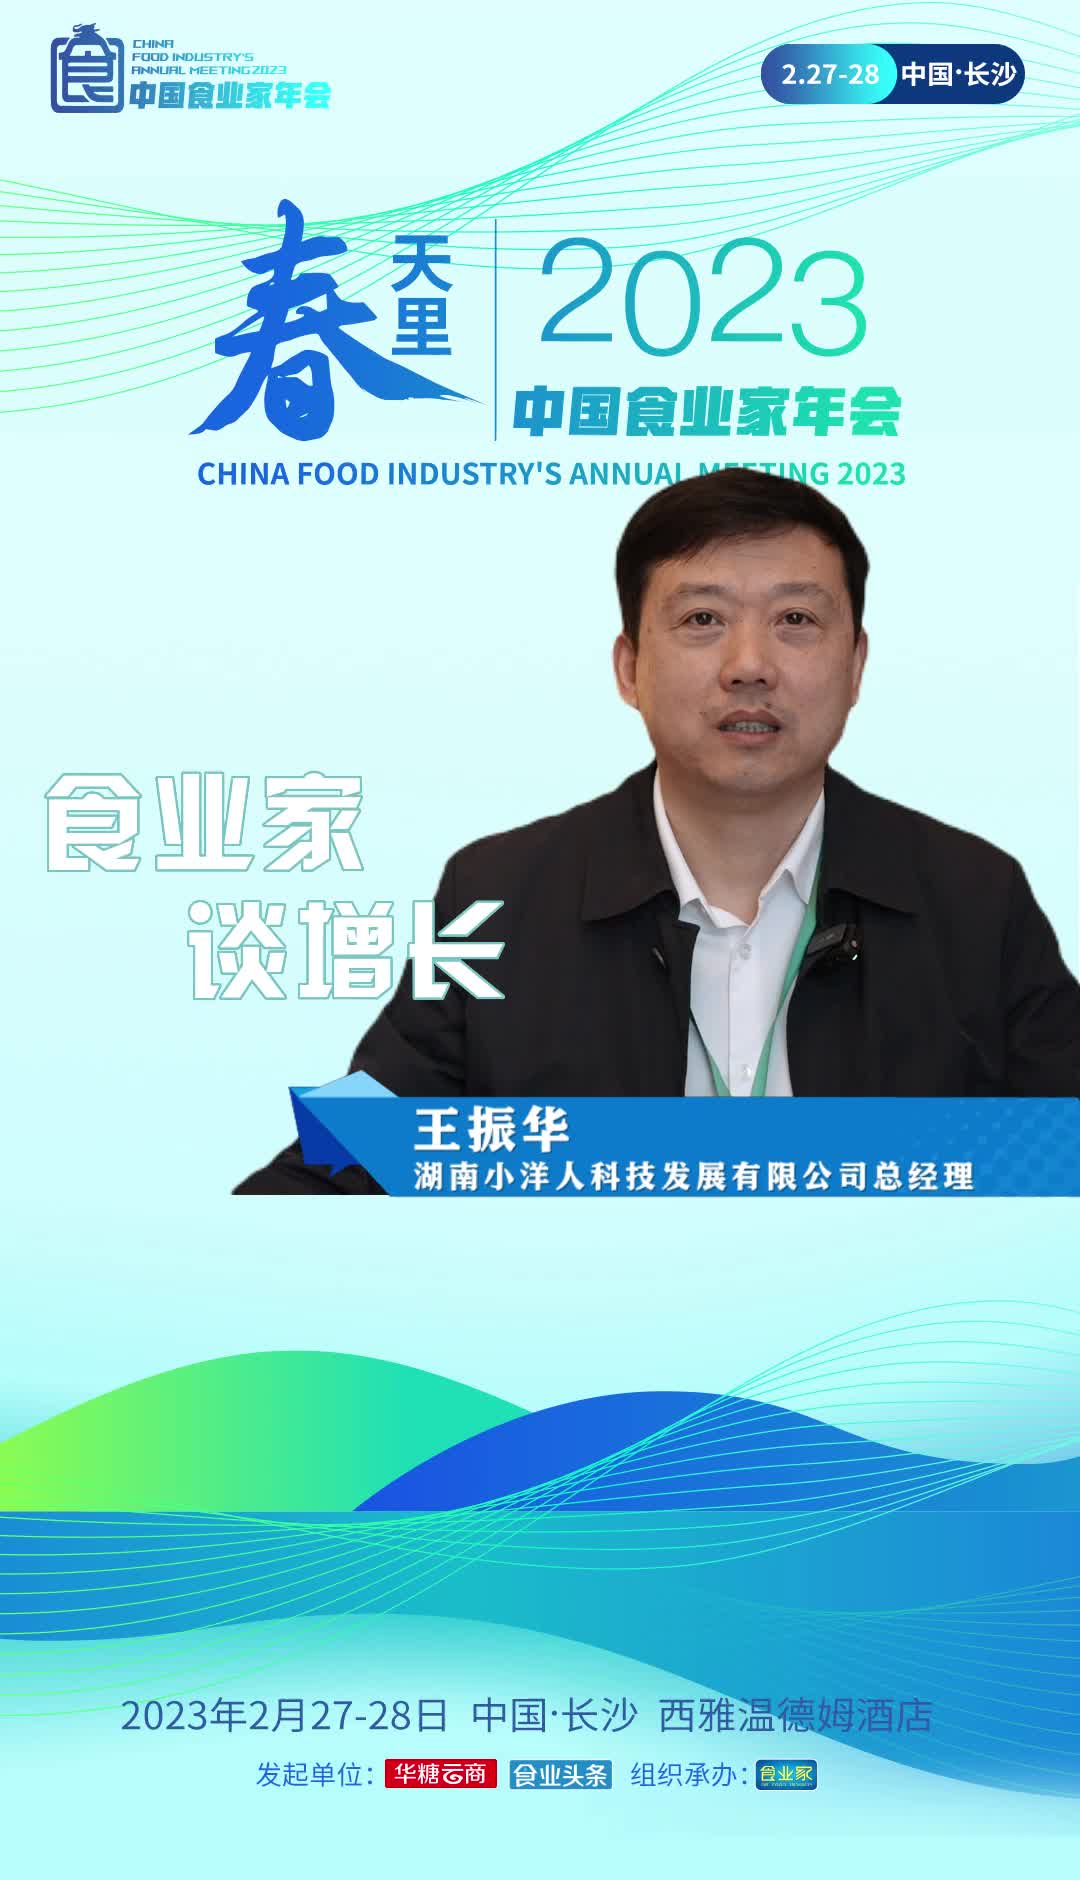 湖南小洋人科技发展有限公司总经理王振华：2023年是消费复苏的一年，食品行业也将迎来大发展的良好机遇